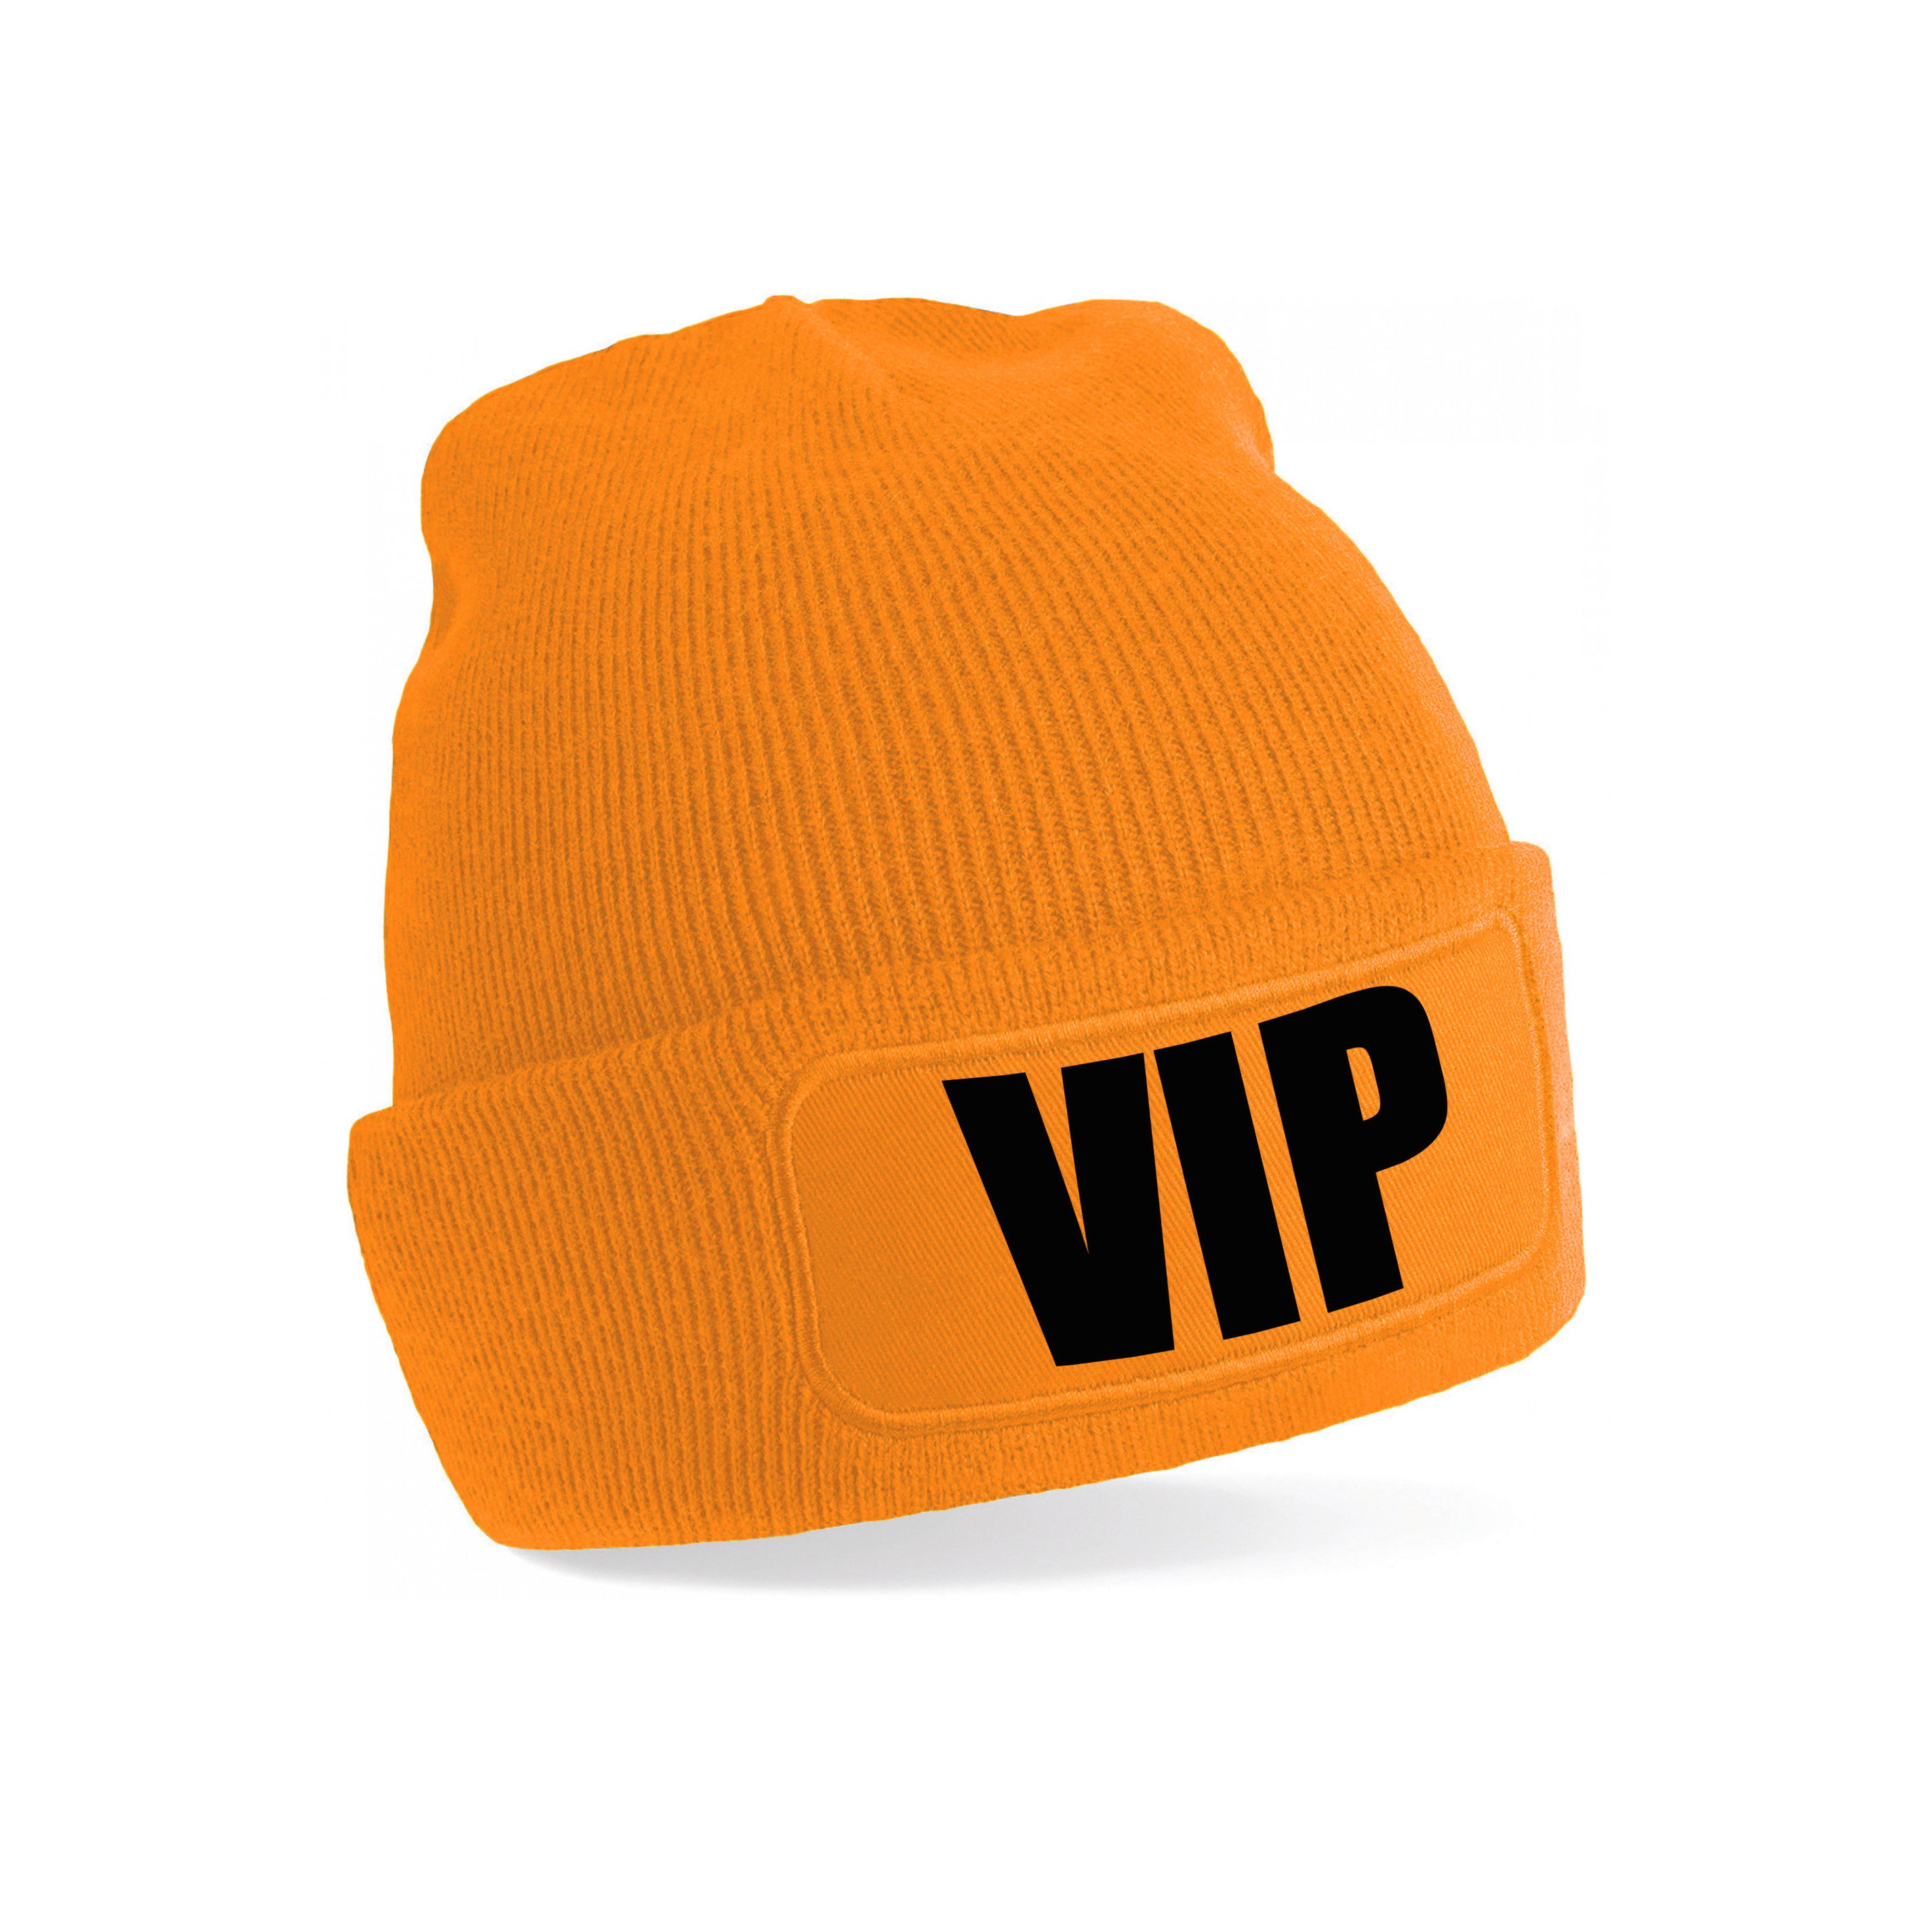 VIP muts-beanie onesize unisex oranje